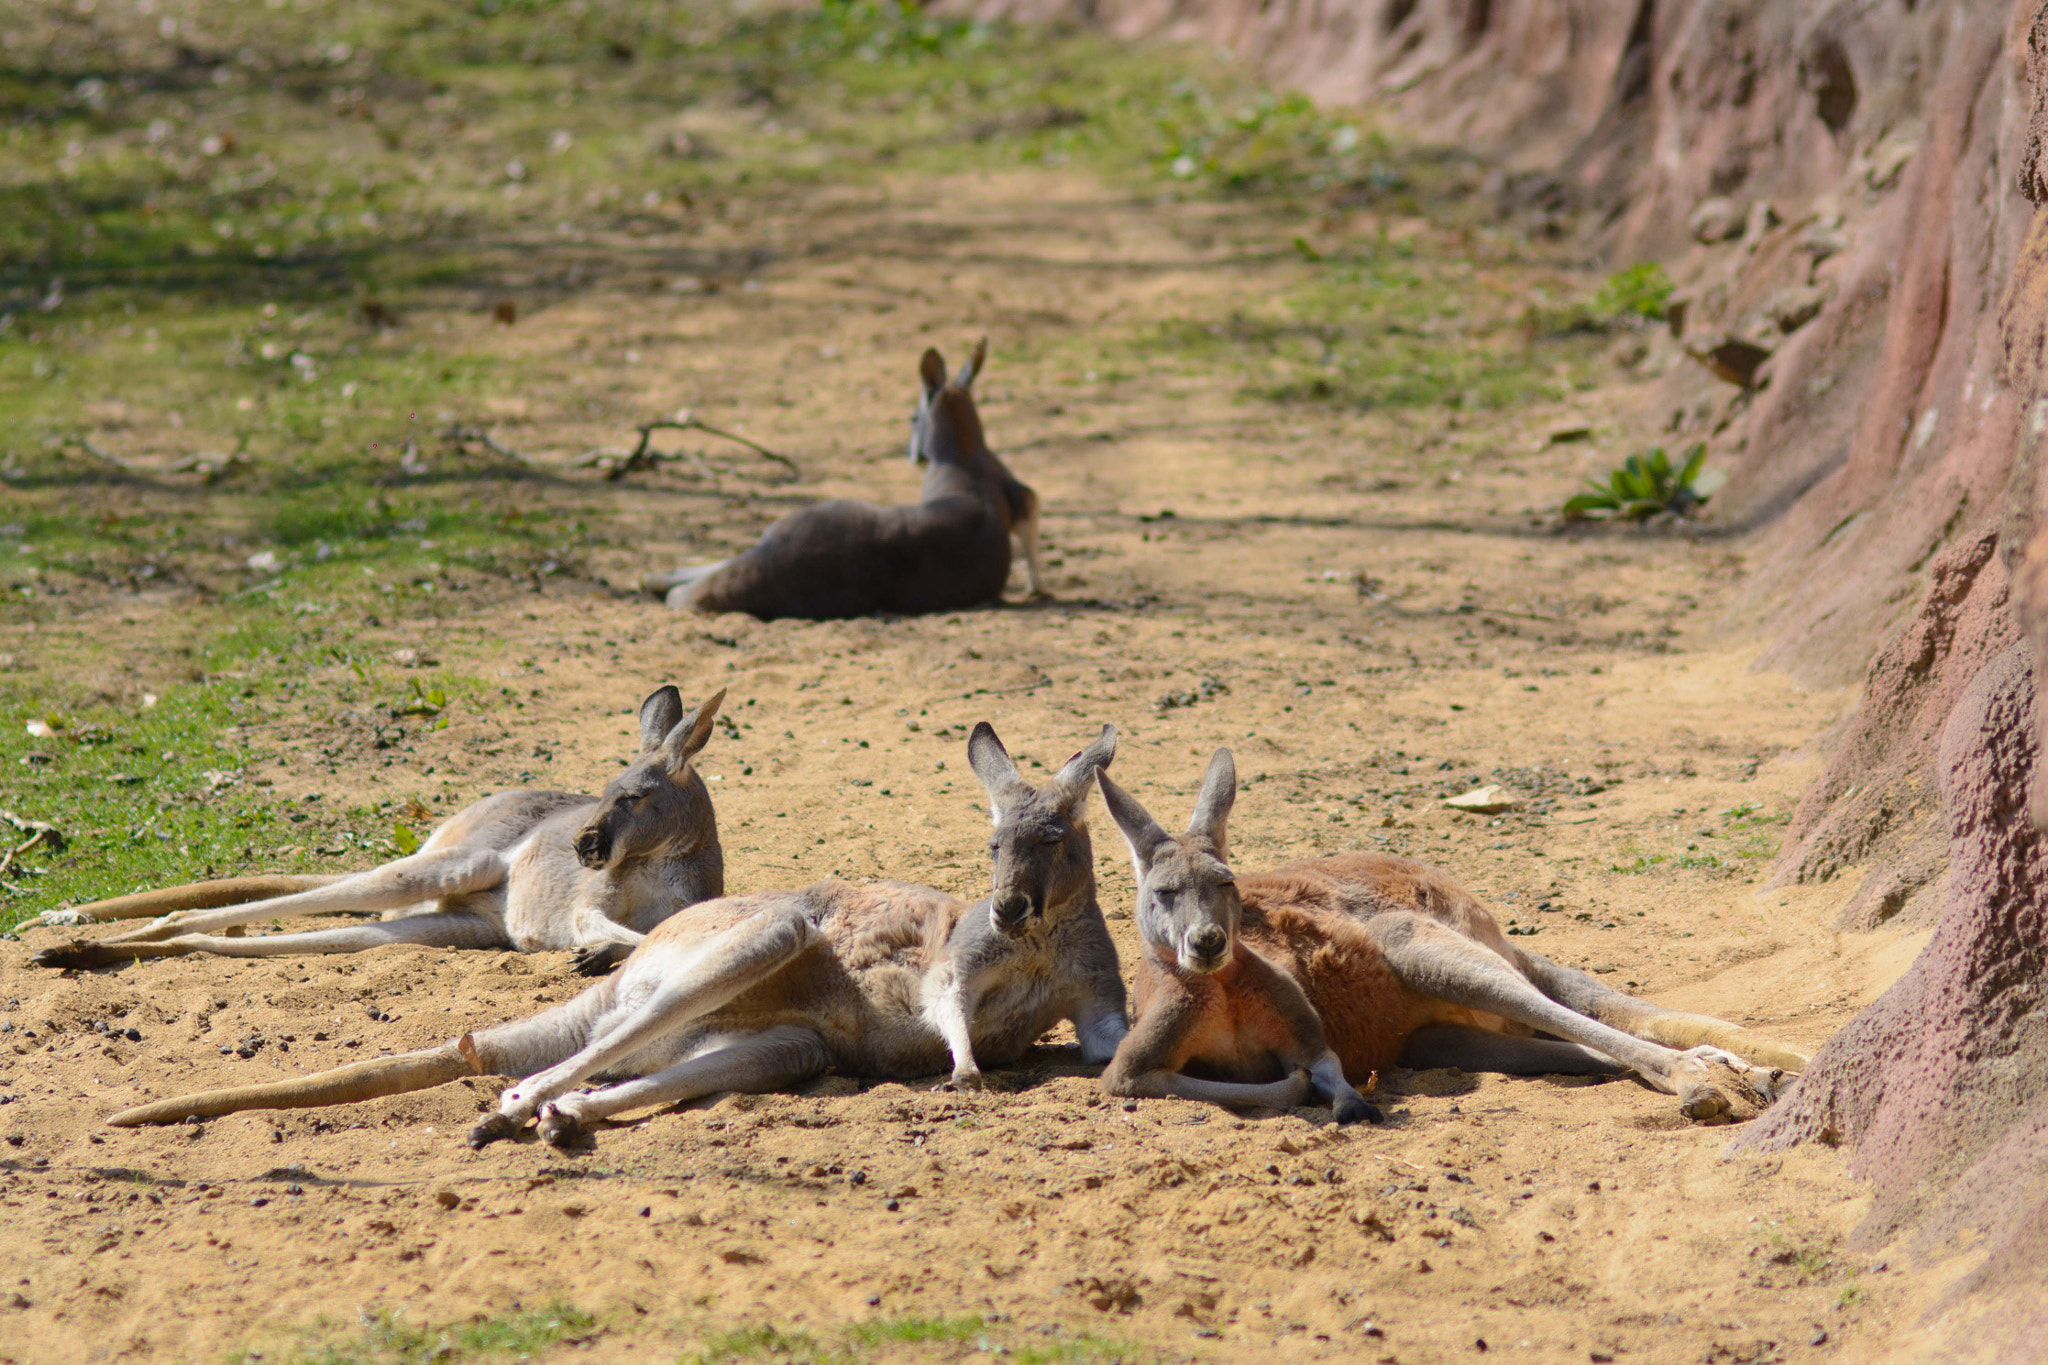 AF Nikkor 85mm f/1.8 sample photo. Lazy kangaroos photography